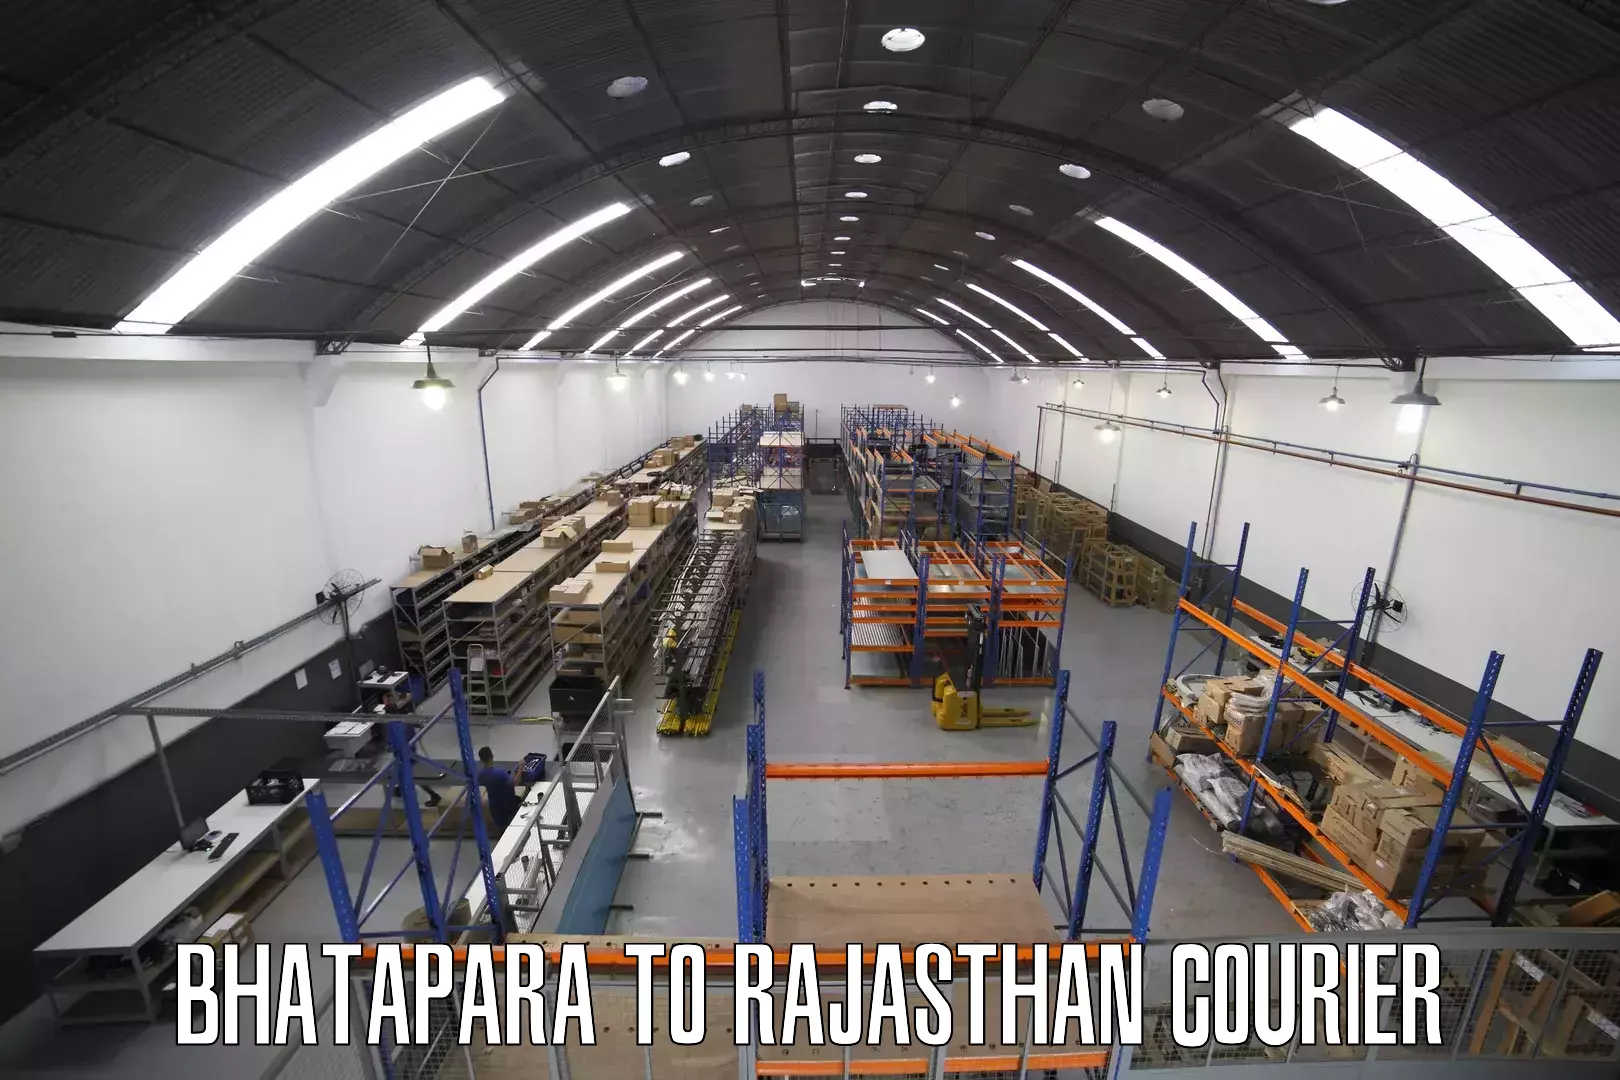 E-commerce fulfillment Bhatapara to Rawatsar